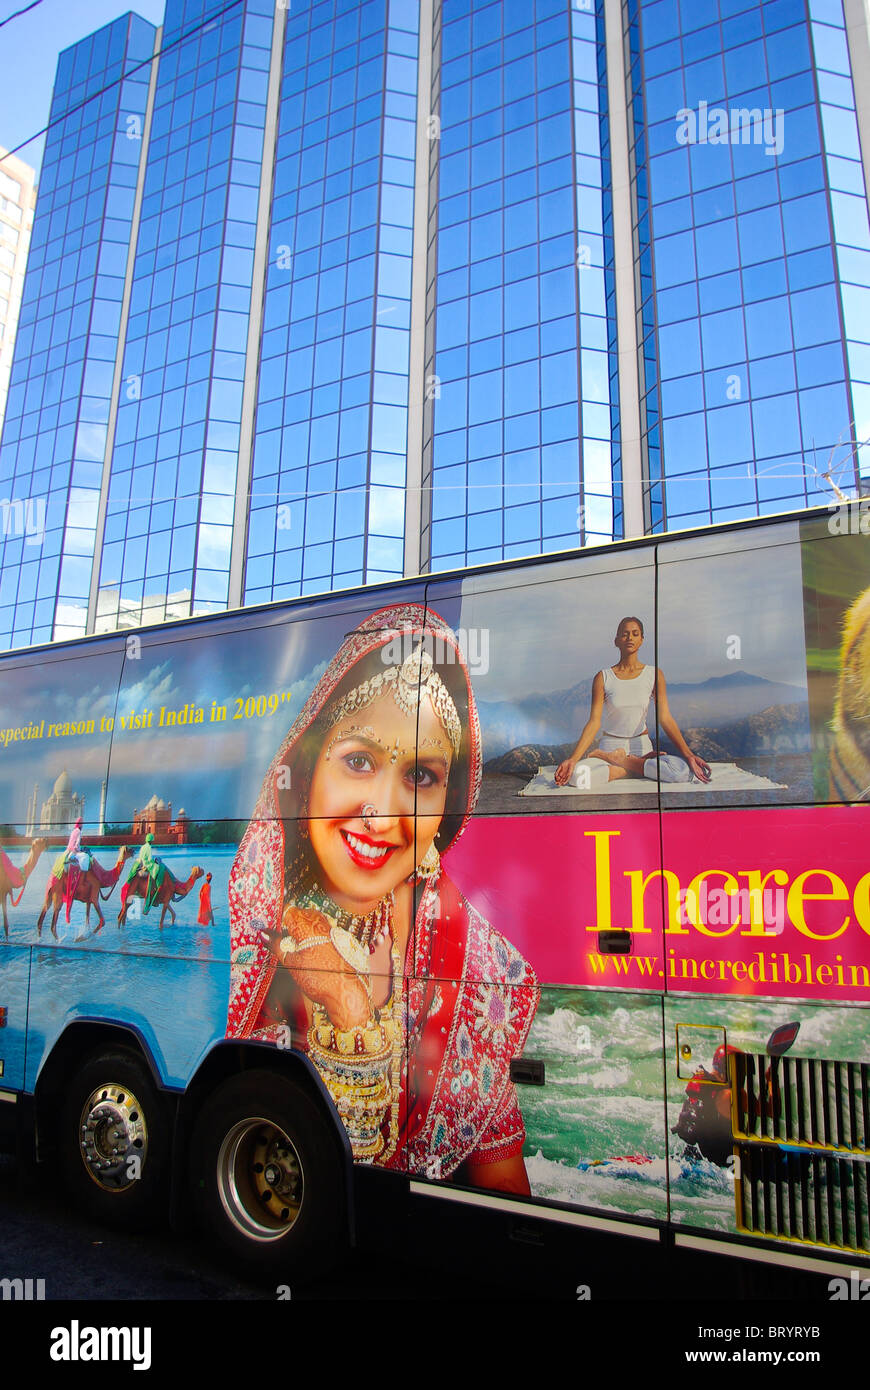 Campagna pubblicitaria. Bus grande annuncio sul viaggio India 2009 con vetro alto edificio in background. La città di New York. Foto Stock